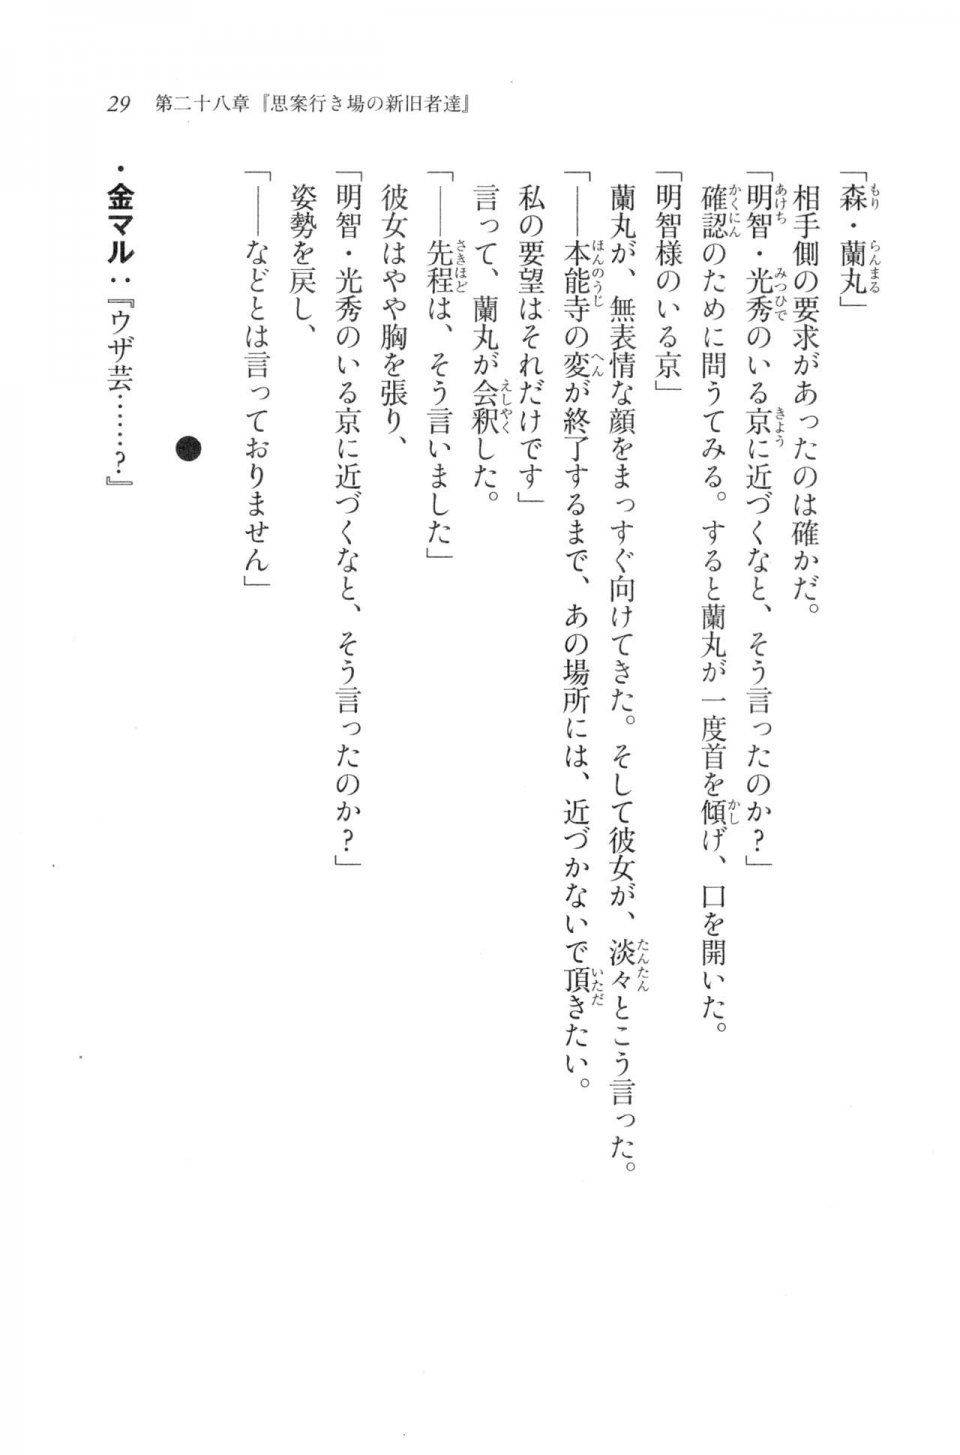 Kyoukai Senjou no Horizon LN Vol 20(8B) - Photo #29